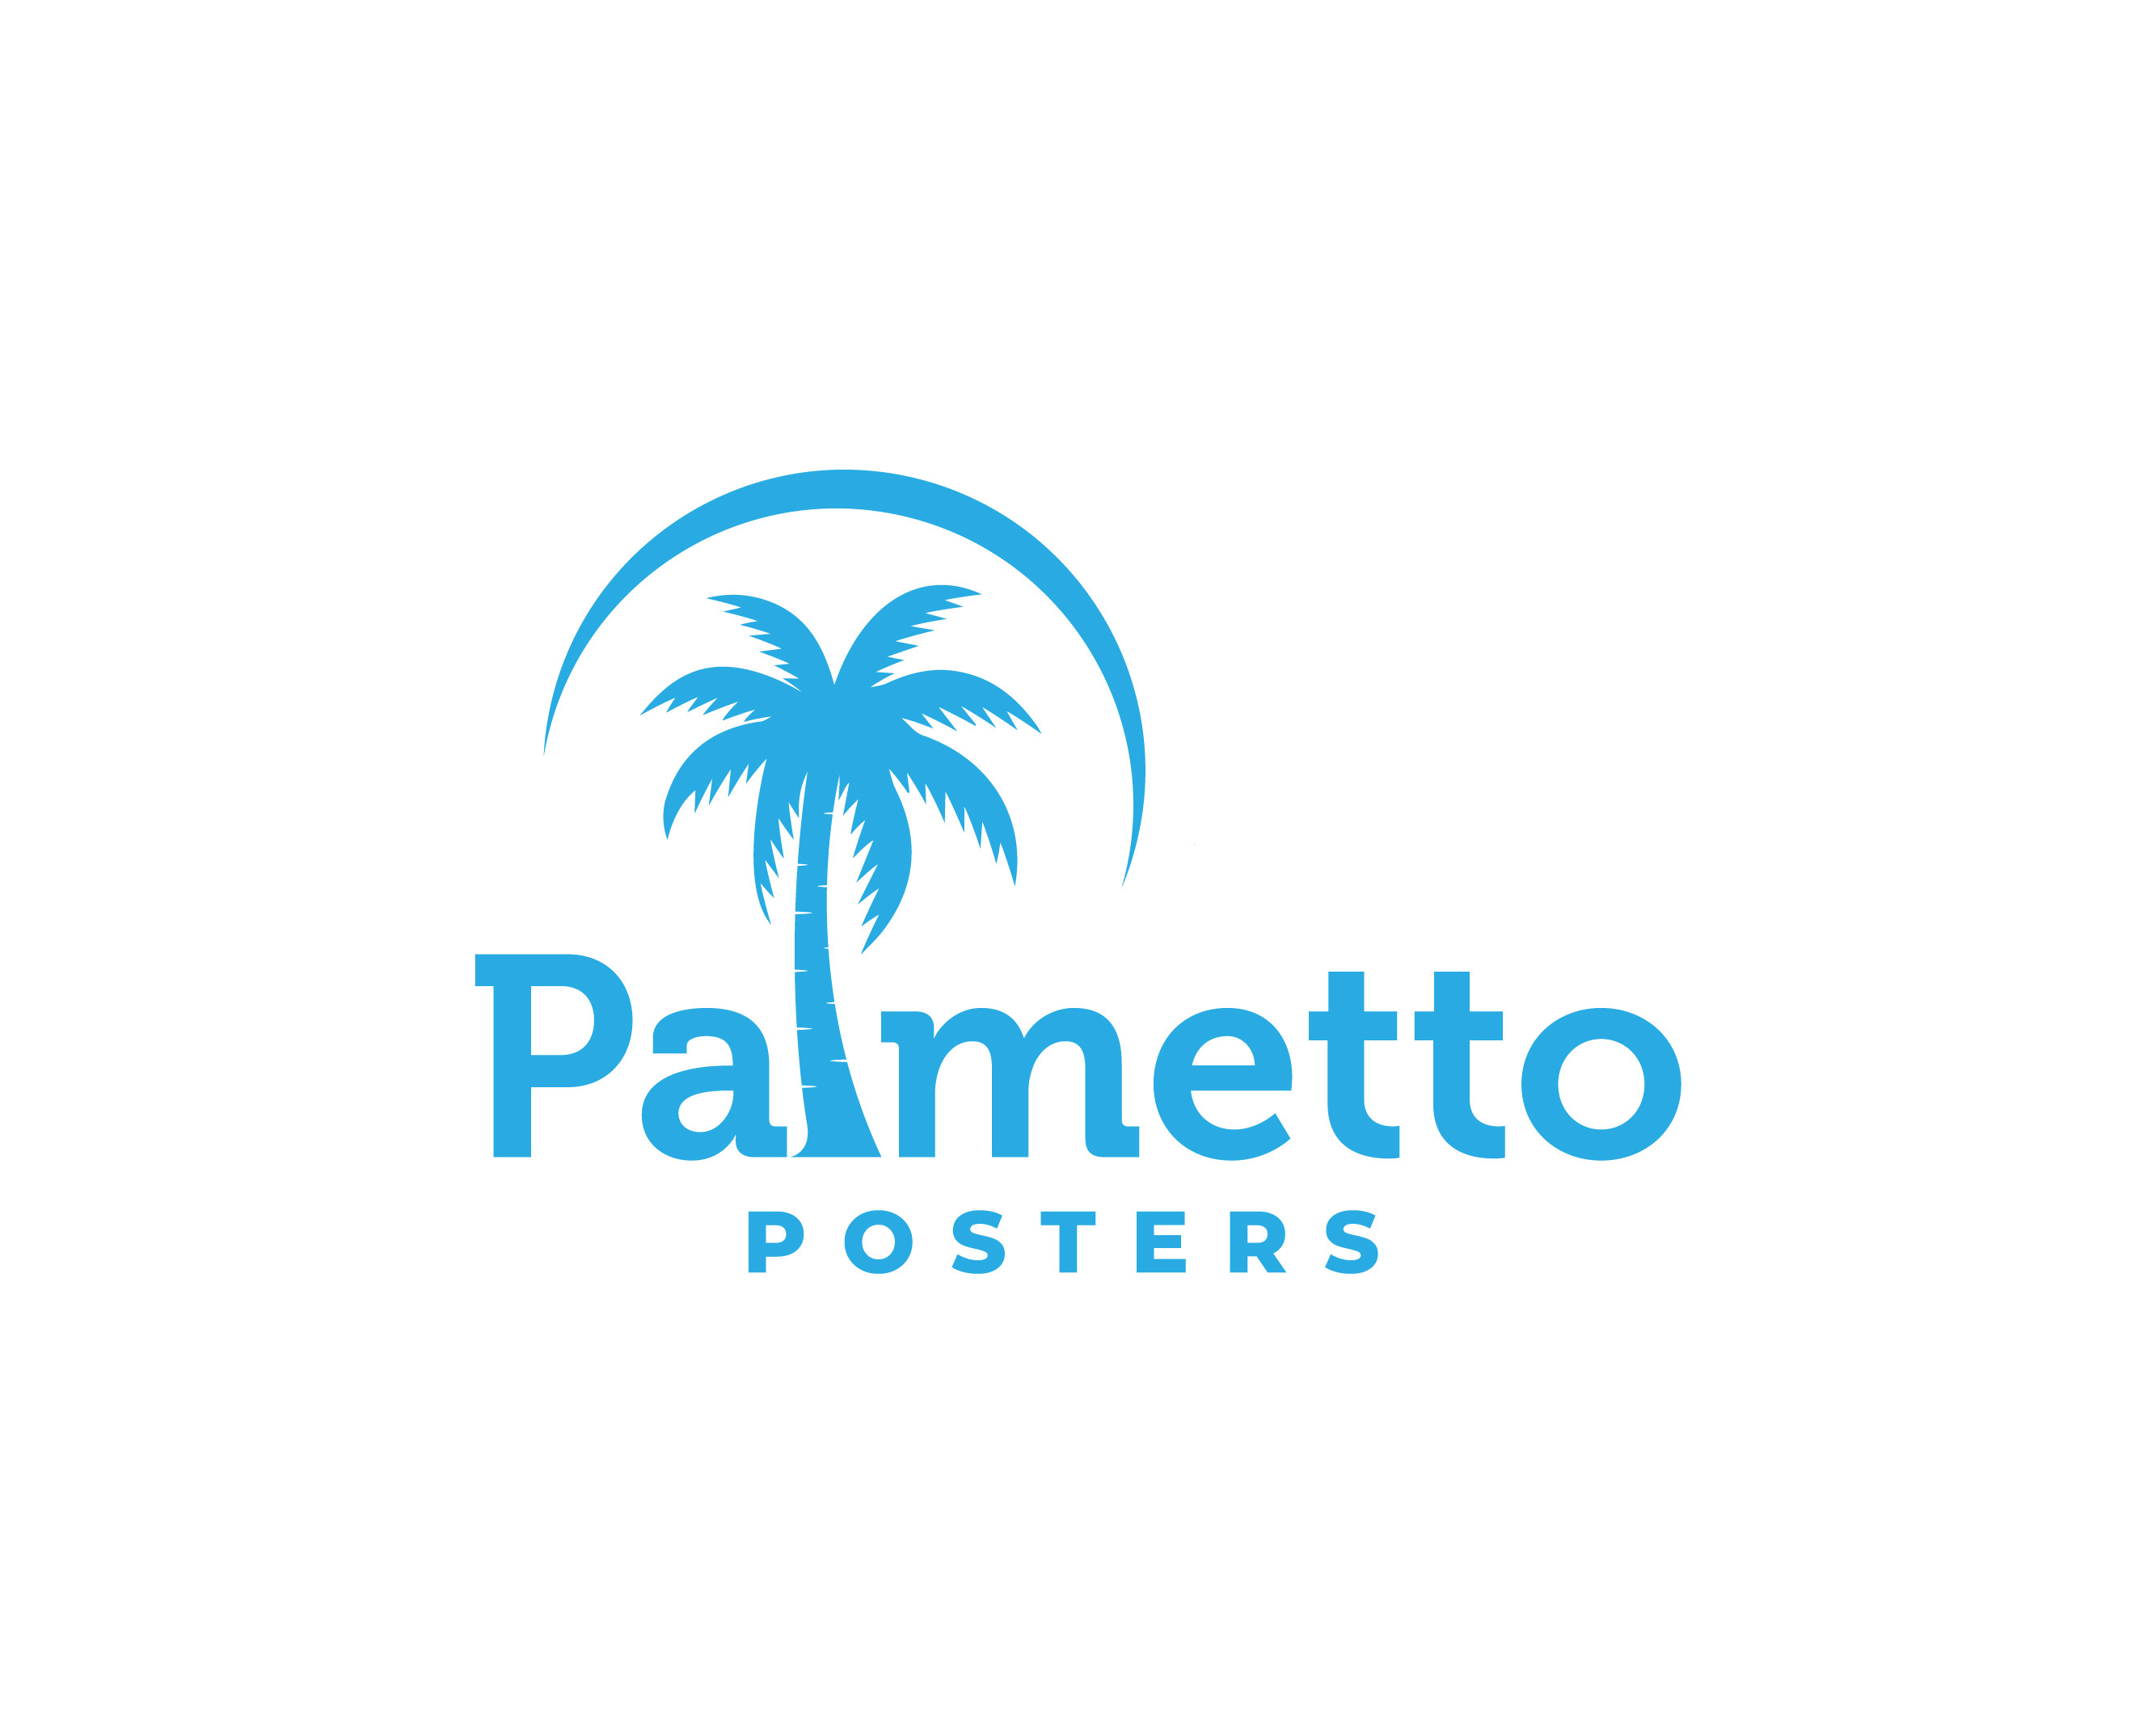 PalmettoPosters.io